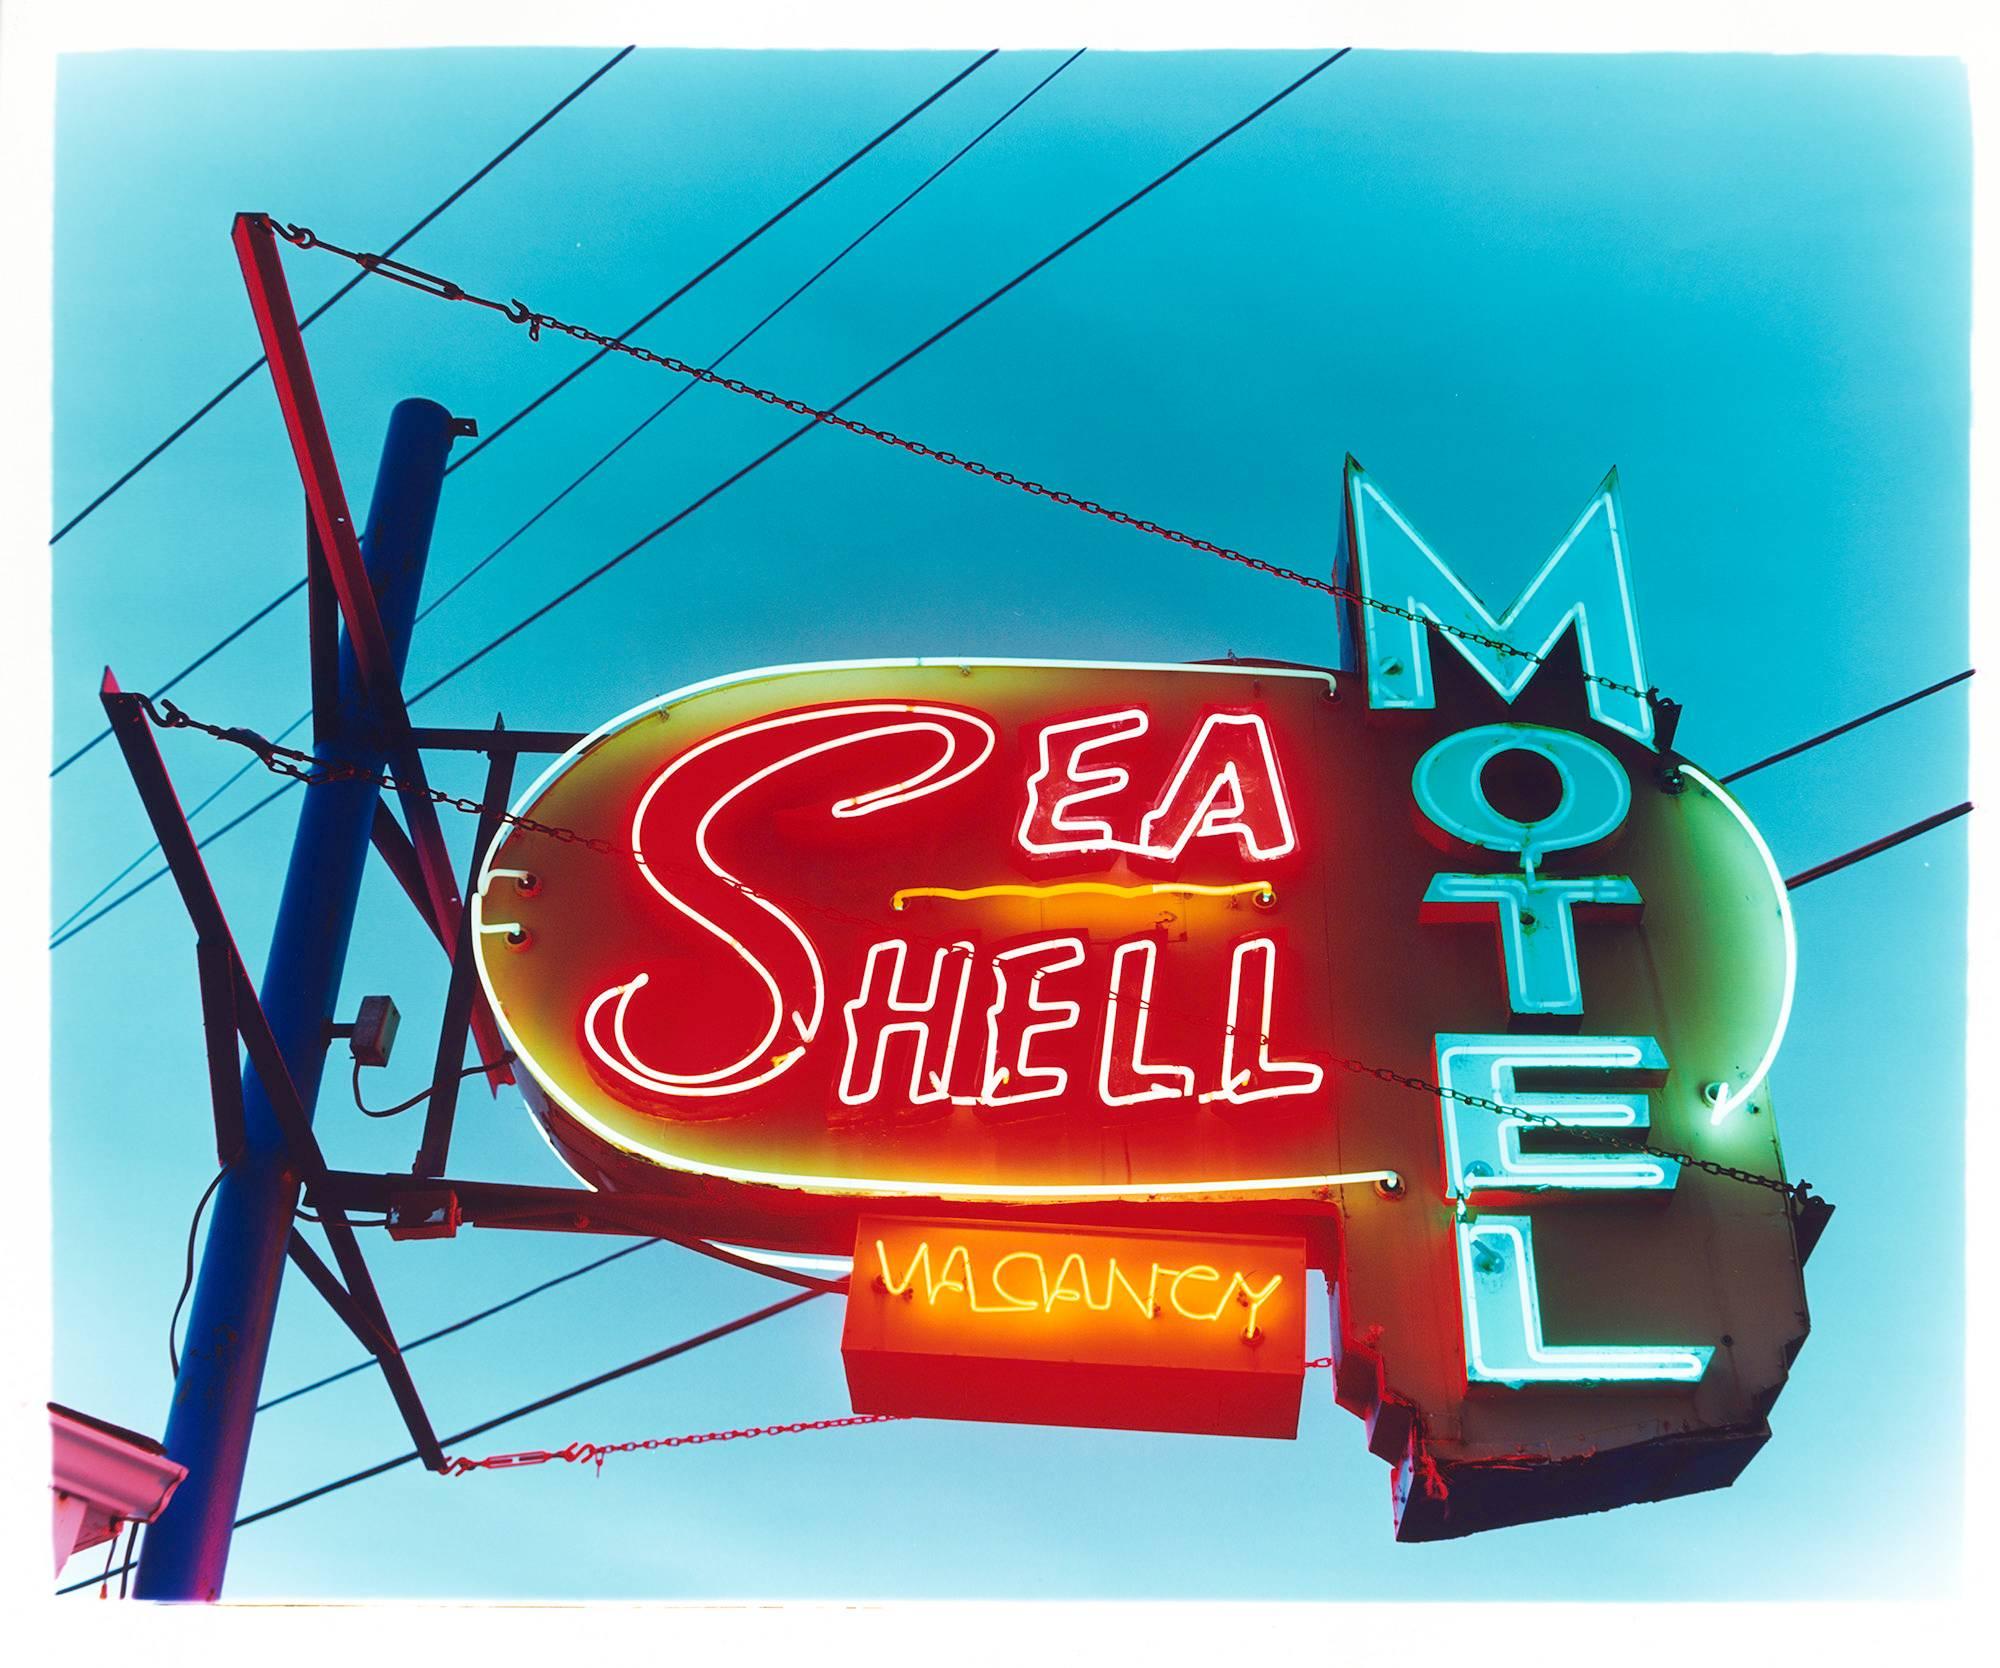 Motel Sea Shell, Wildwood, New Jersey - Photographie couleur Porn d'un panneau de signalisation américain